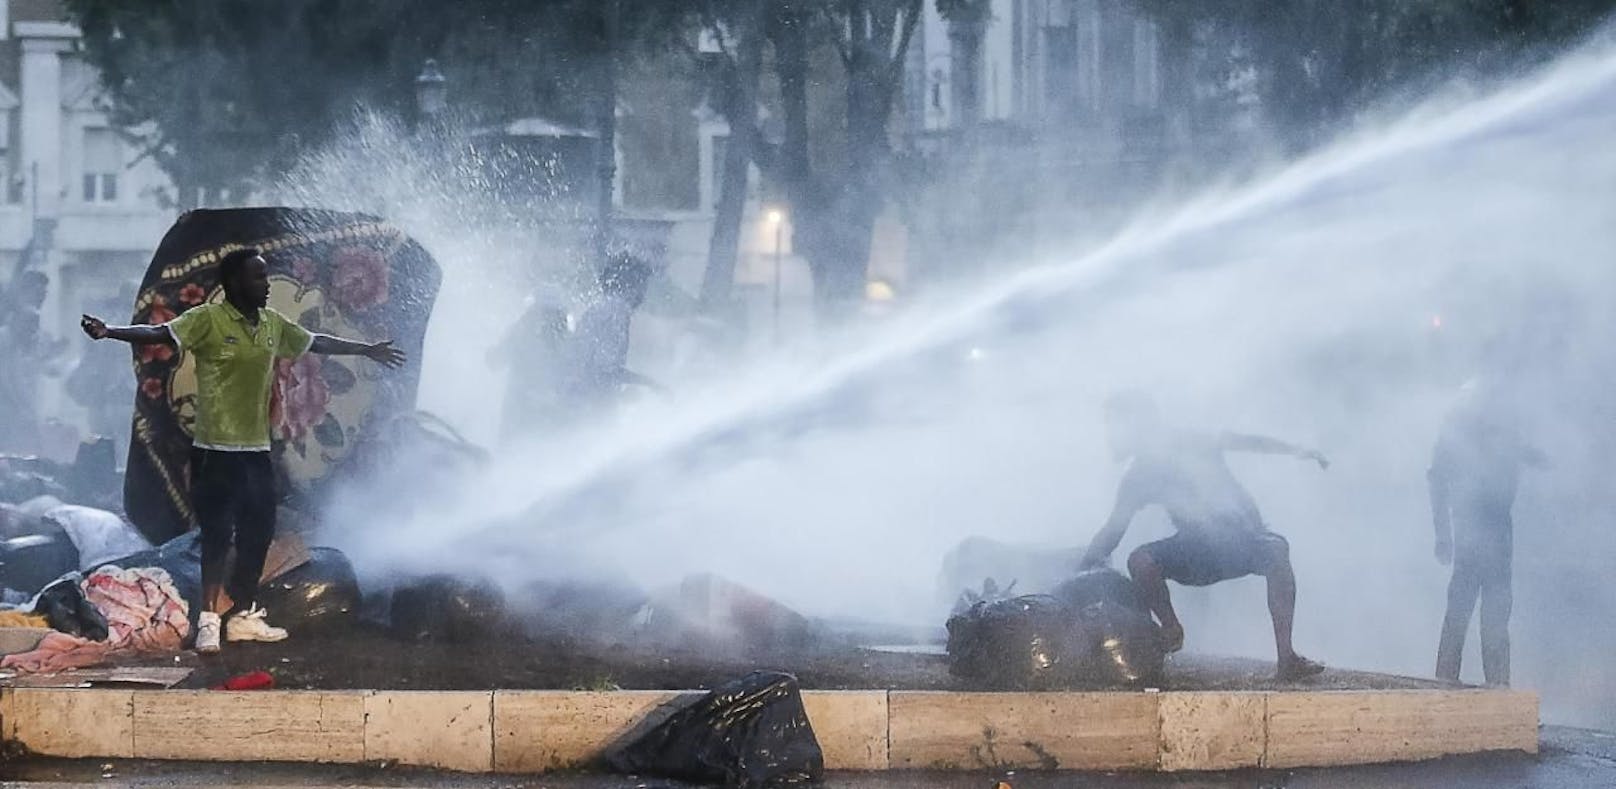 Krawalle in Rom: Polizei räumt Platz von Migranten